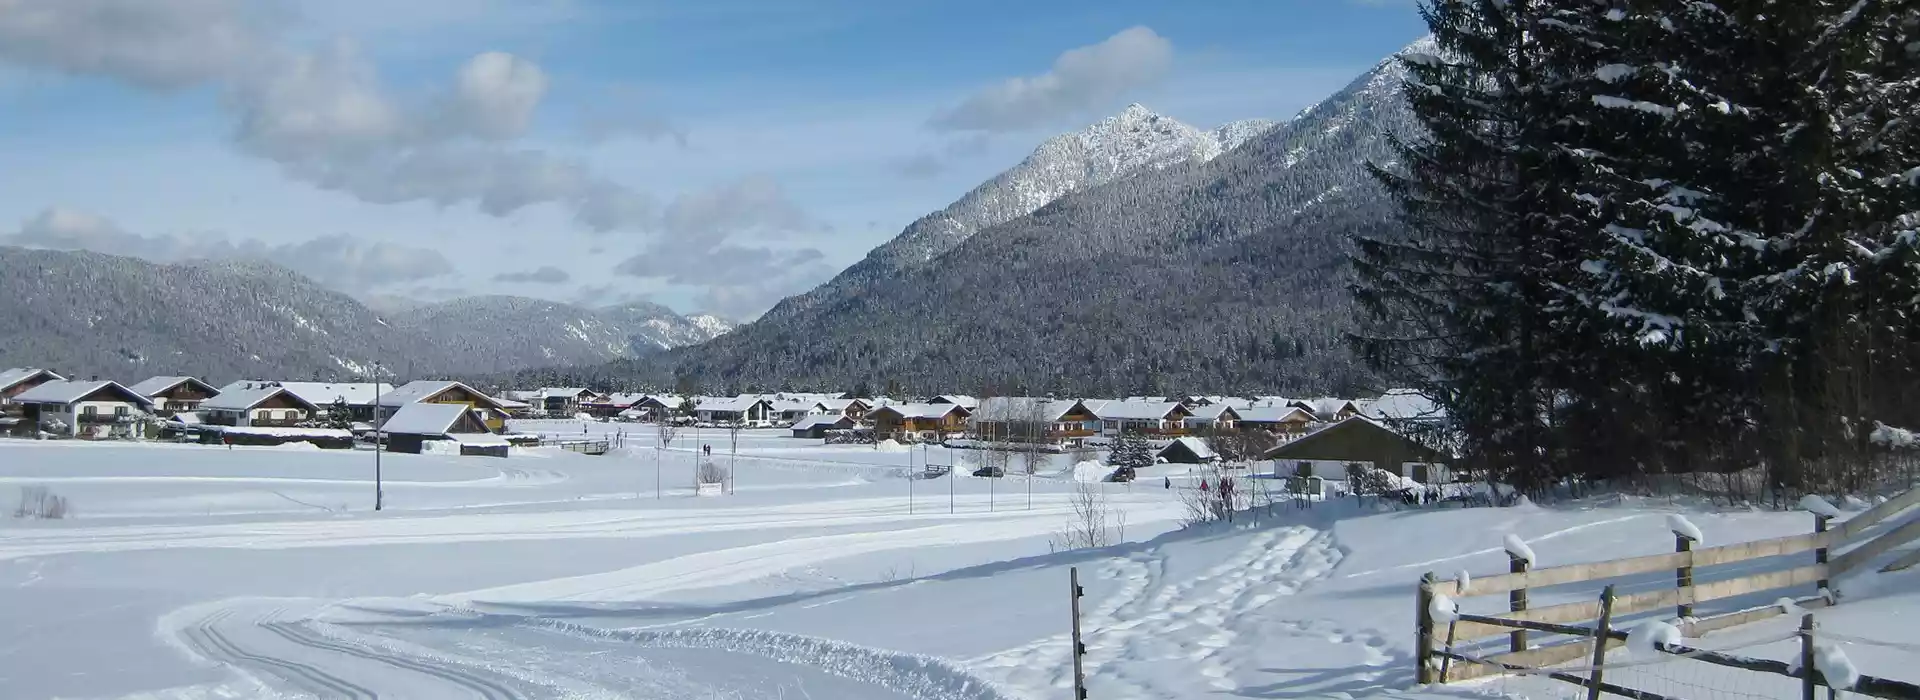 Ferienwohnungen im Karwendel mit Loipe im Winter